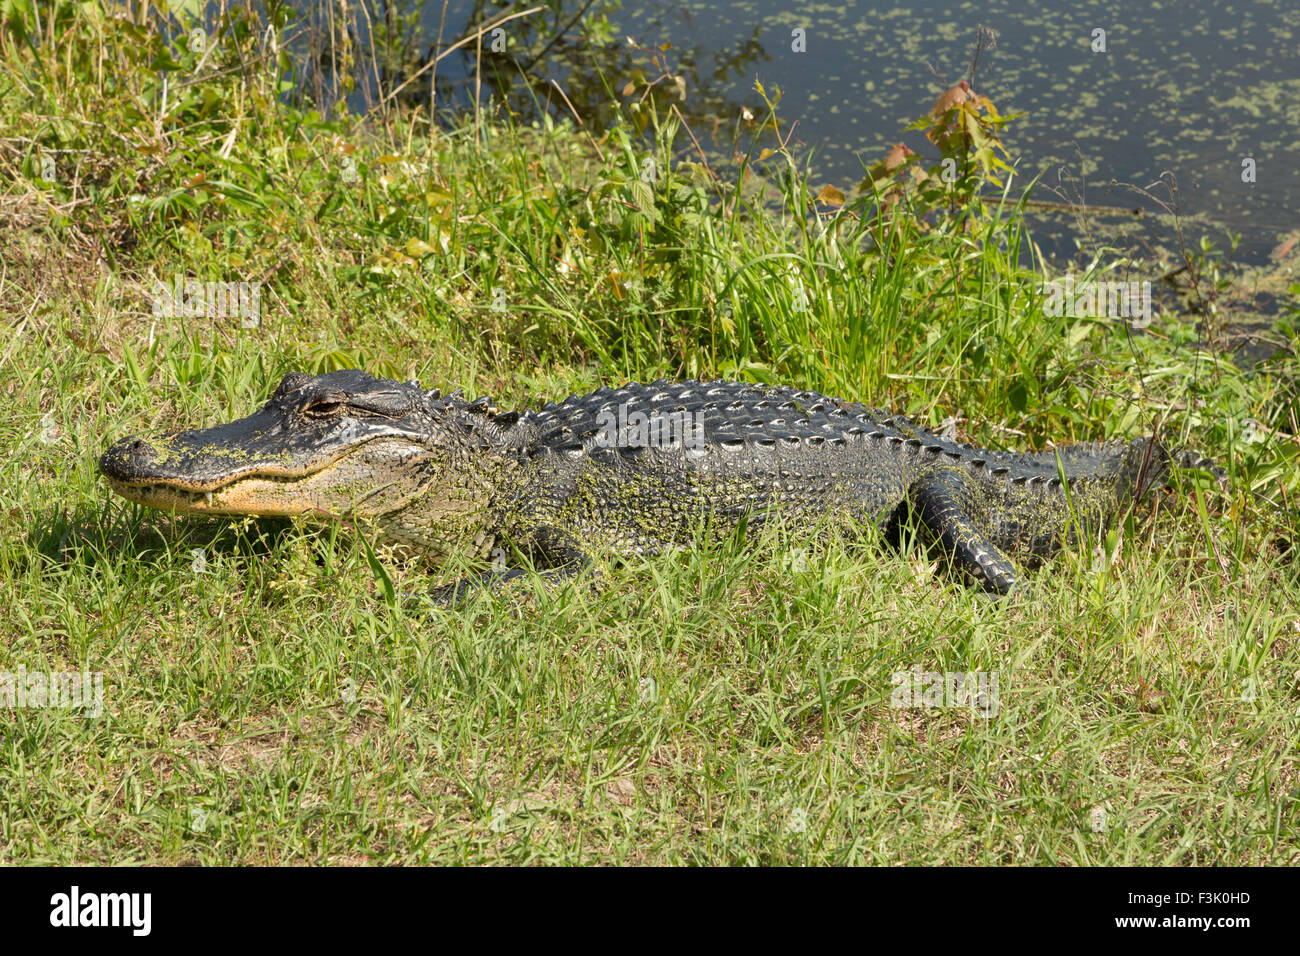 Eine Nahaufnahme Foto von einem amerikanischen Alligator in freier Wildbahn in der Nähe von Savannah in Georgia. Stockfoto